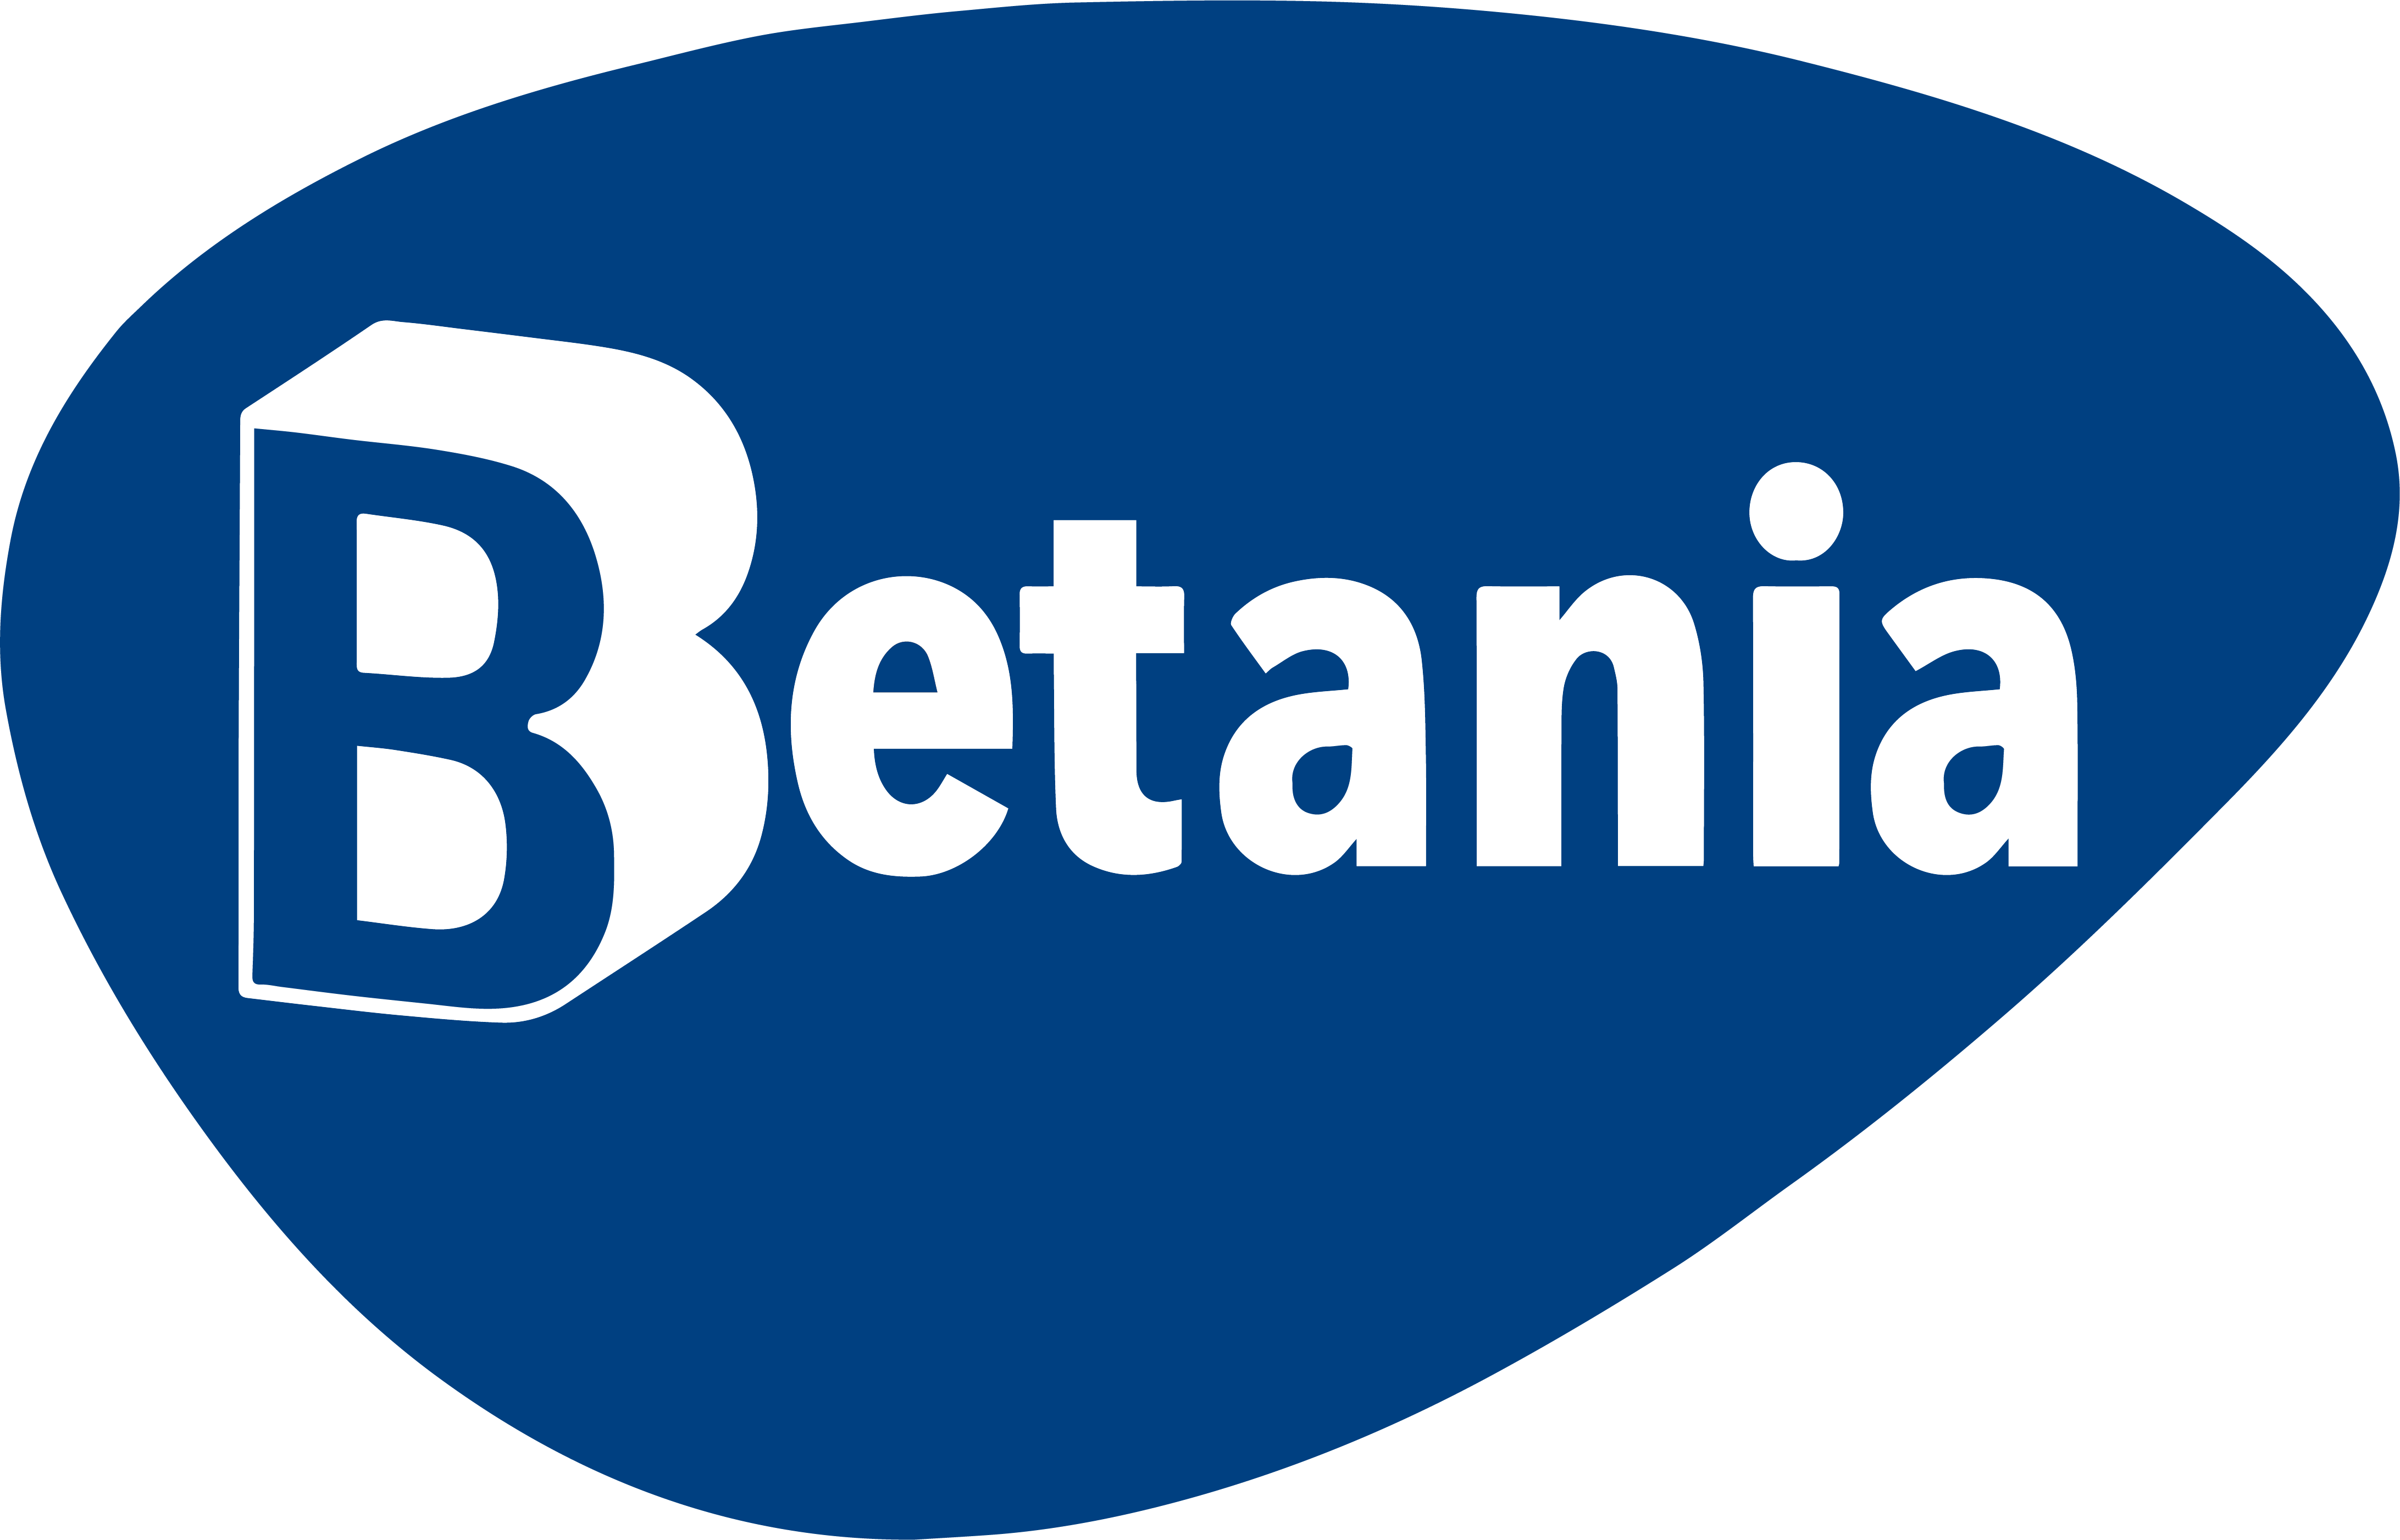 Información sobre Betania TV